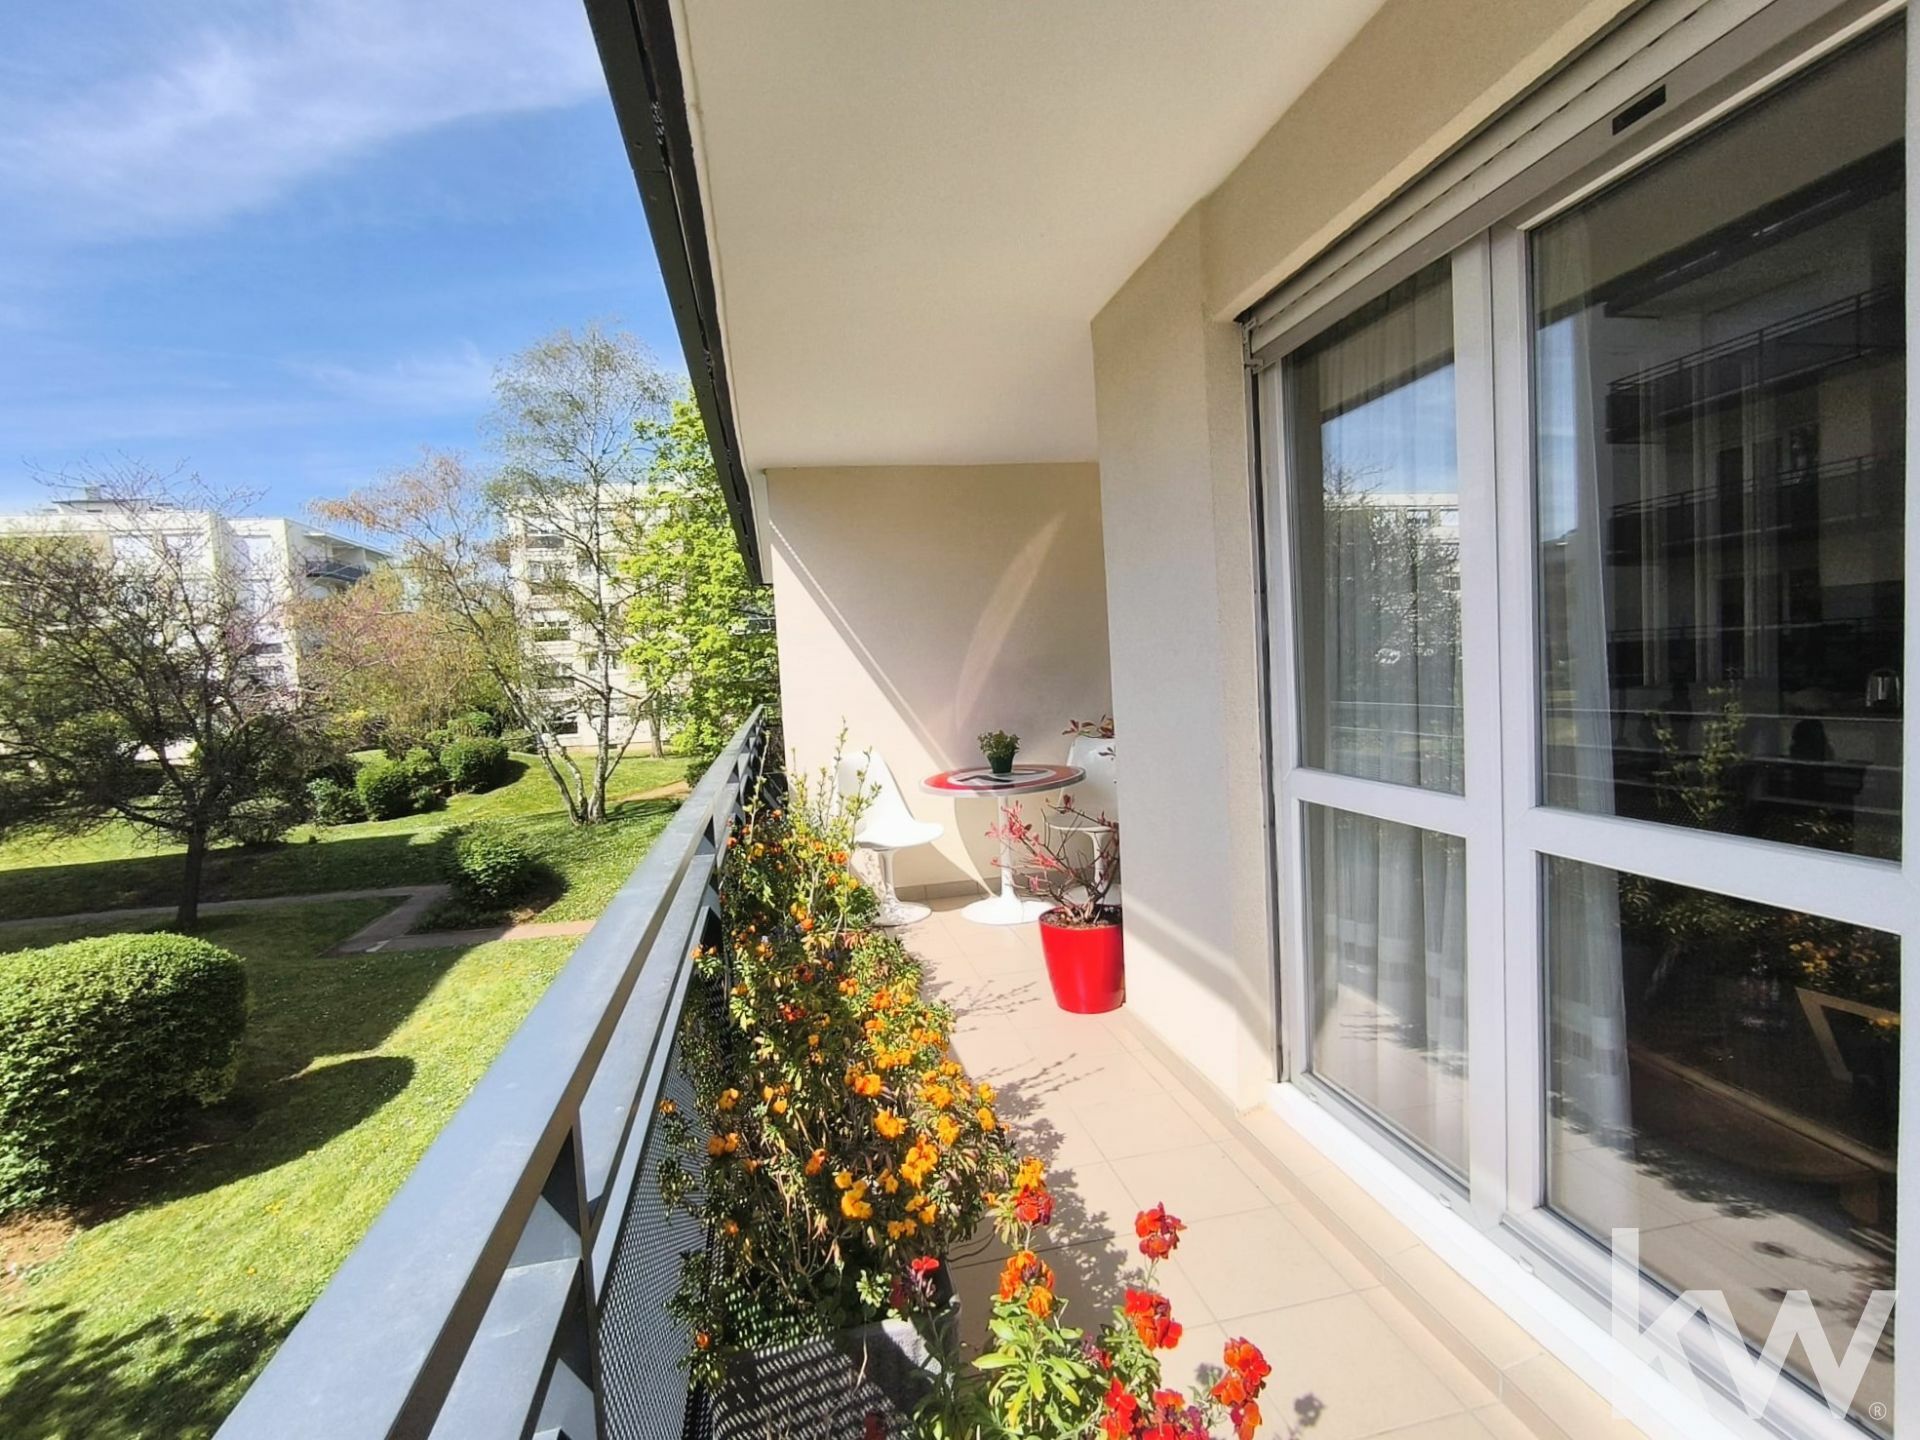 VENTE : appartement de 5 pièces (105 m²) à Bois d'Arcy